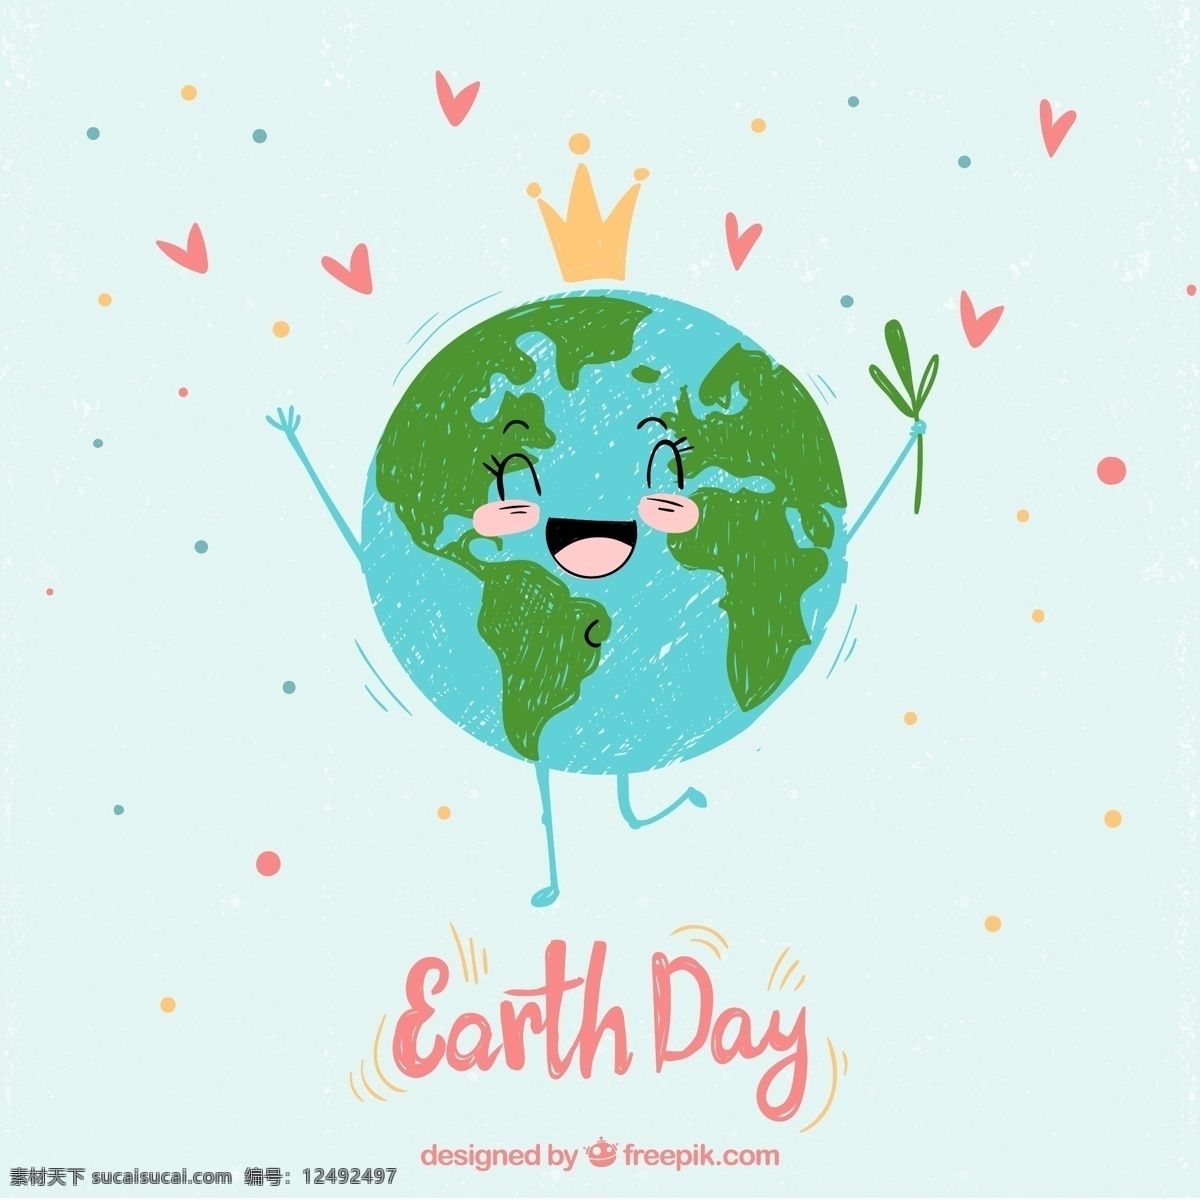 世界 地球日 笑脸 地球 爱心 世界地球日 矢量图 格式 源文件 矢量 高清图片